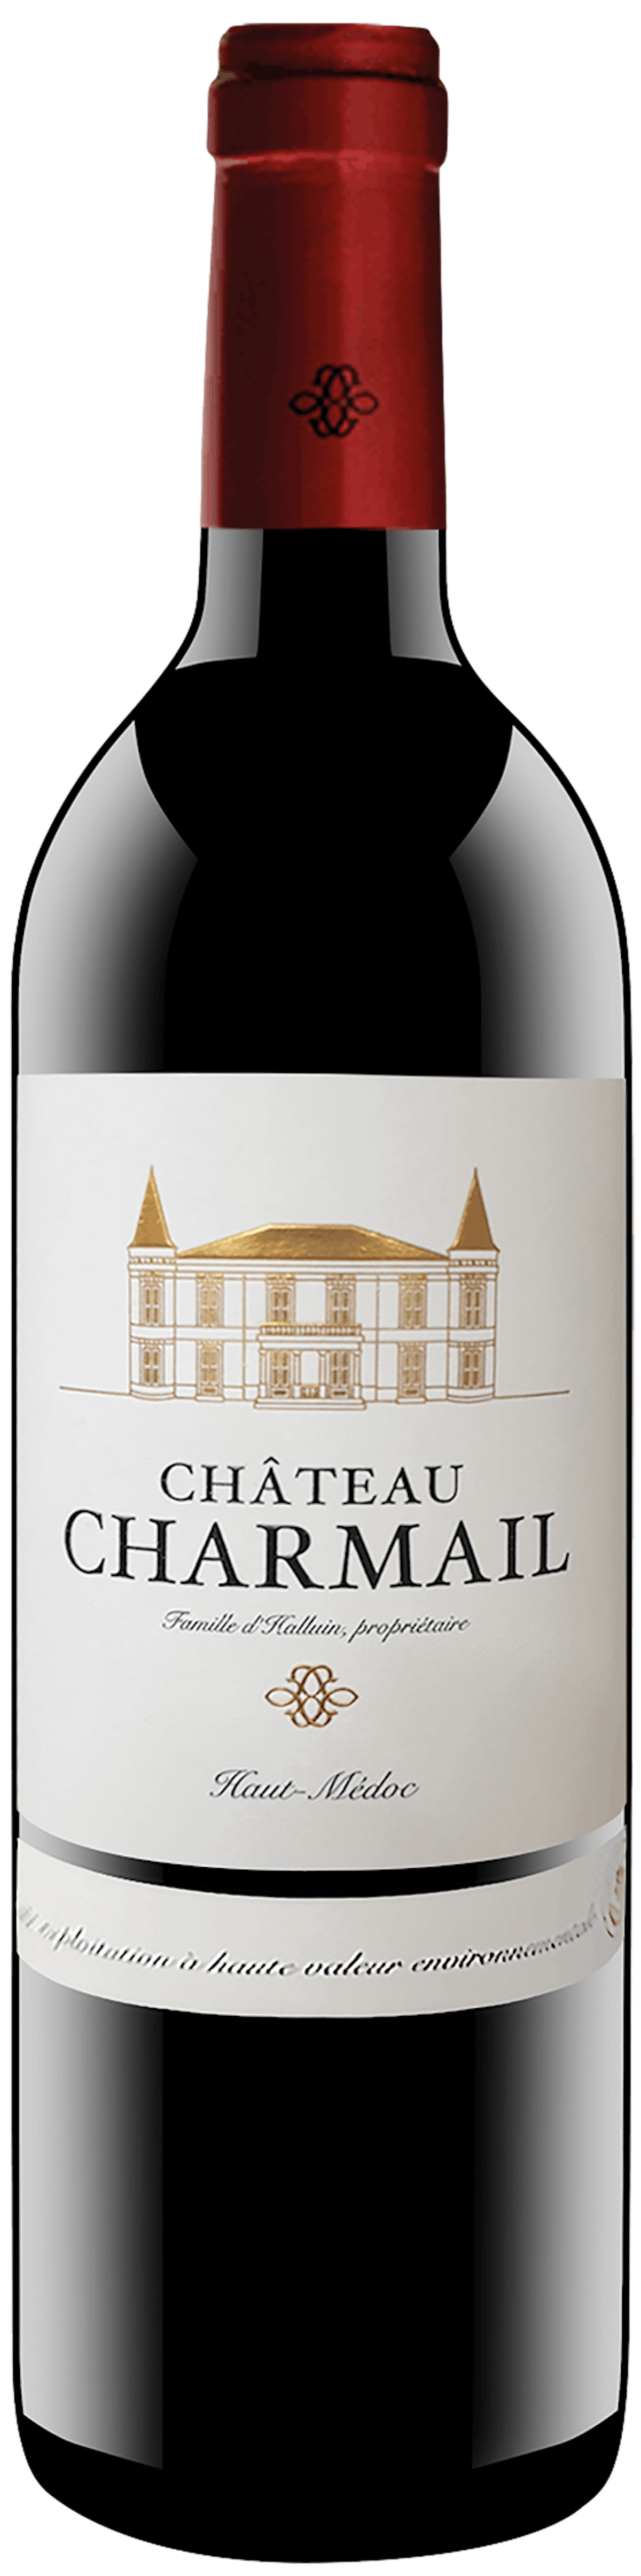 Château Charmail Cru Bourgeois